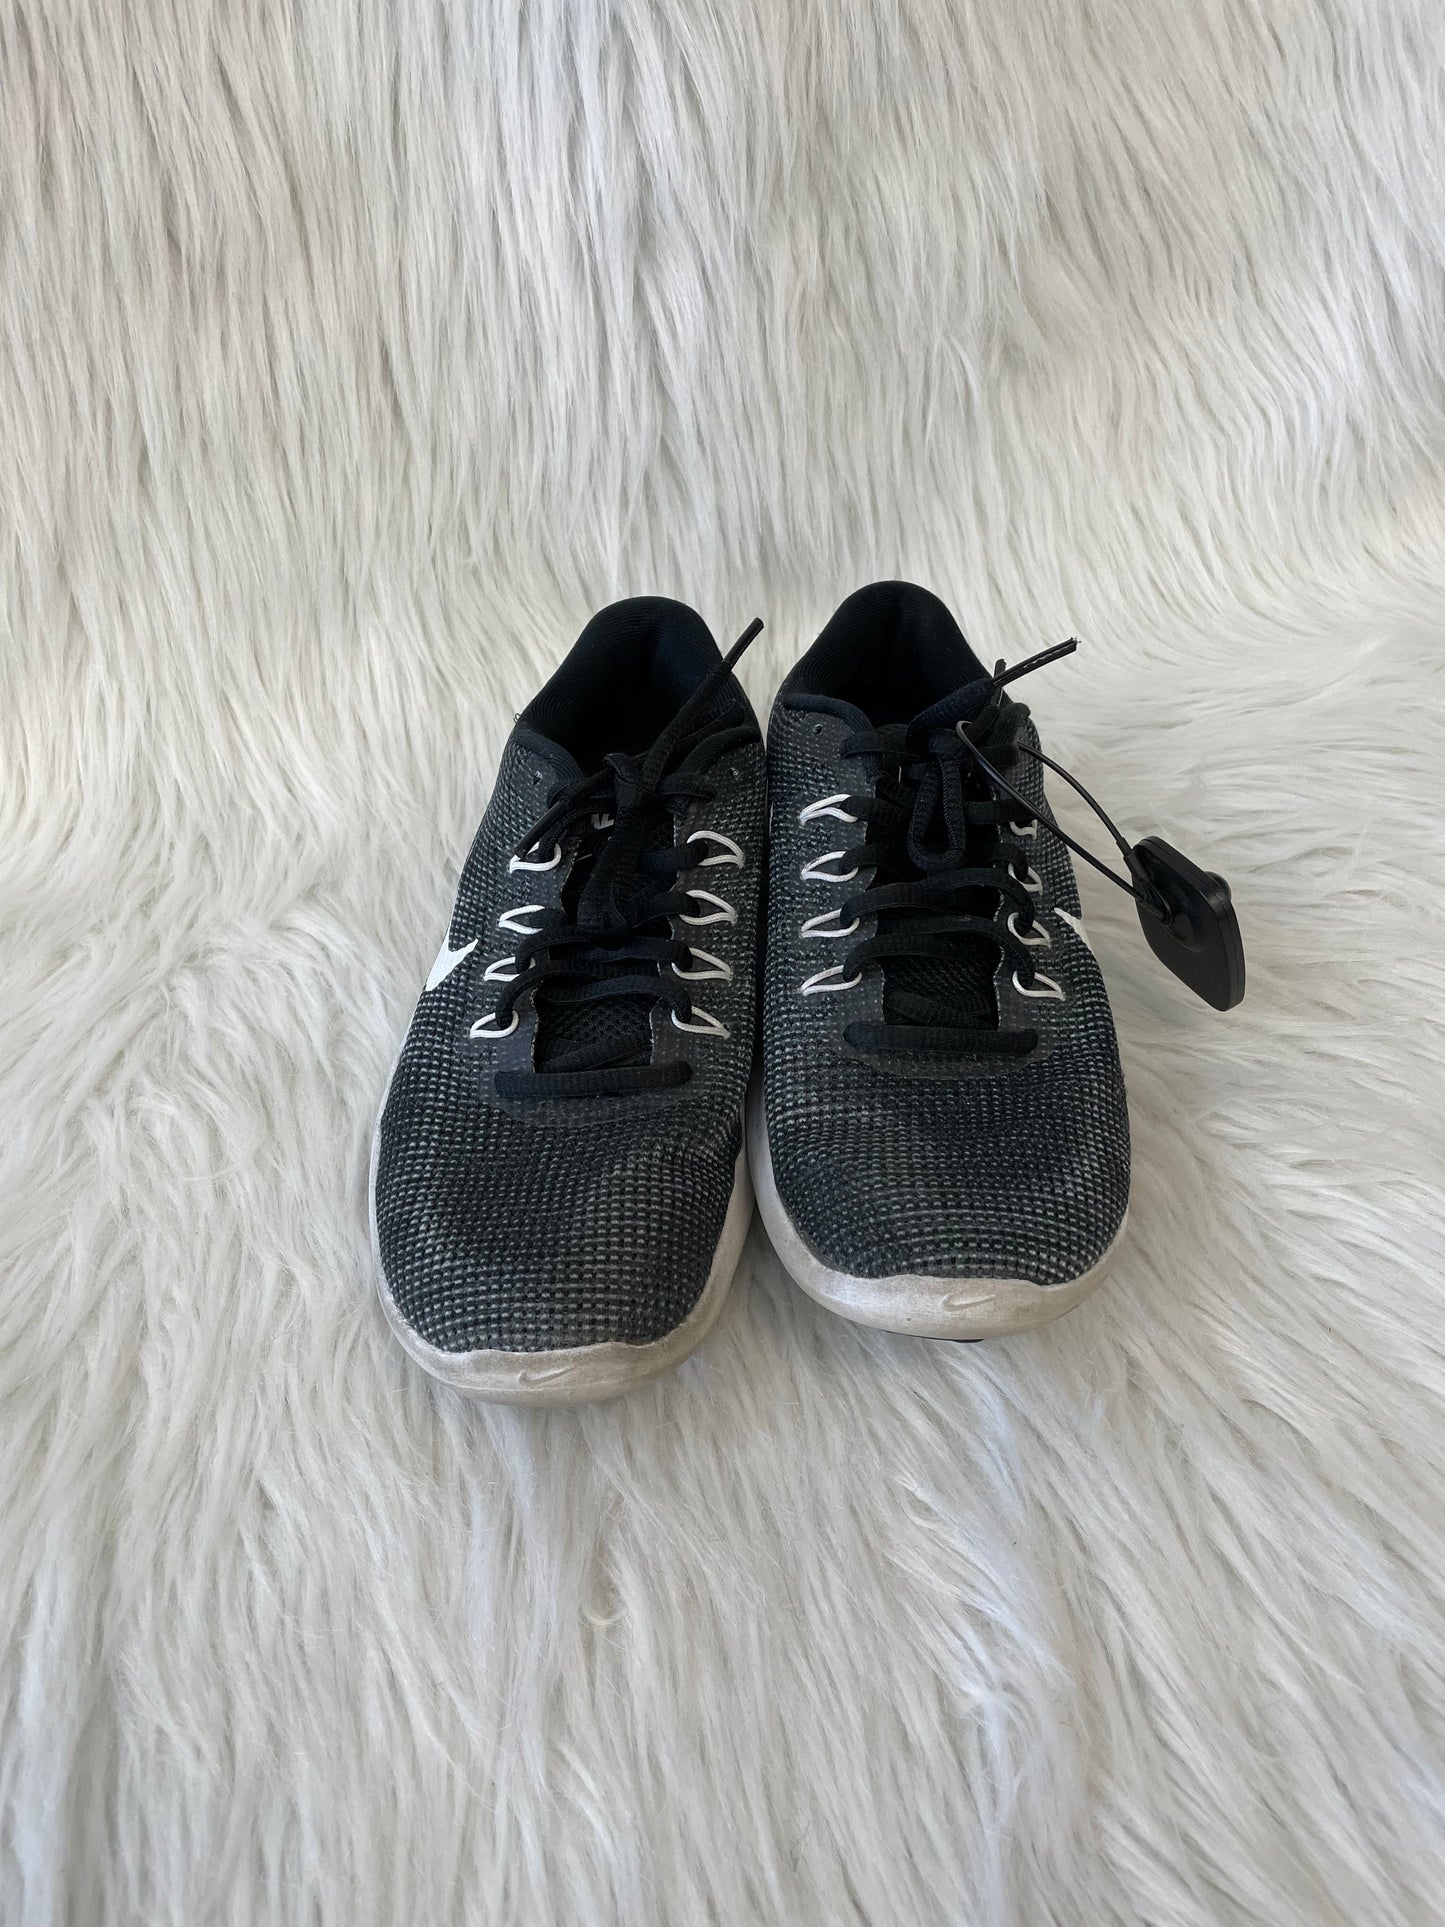 Grey White Shoes Athletic Nike, Size 6